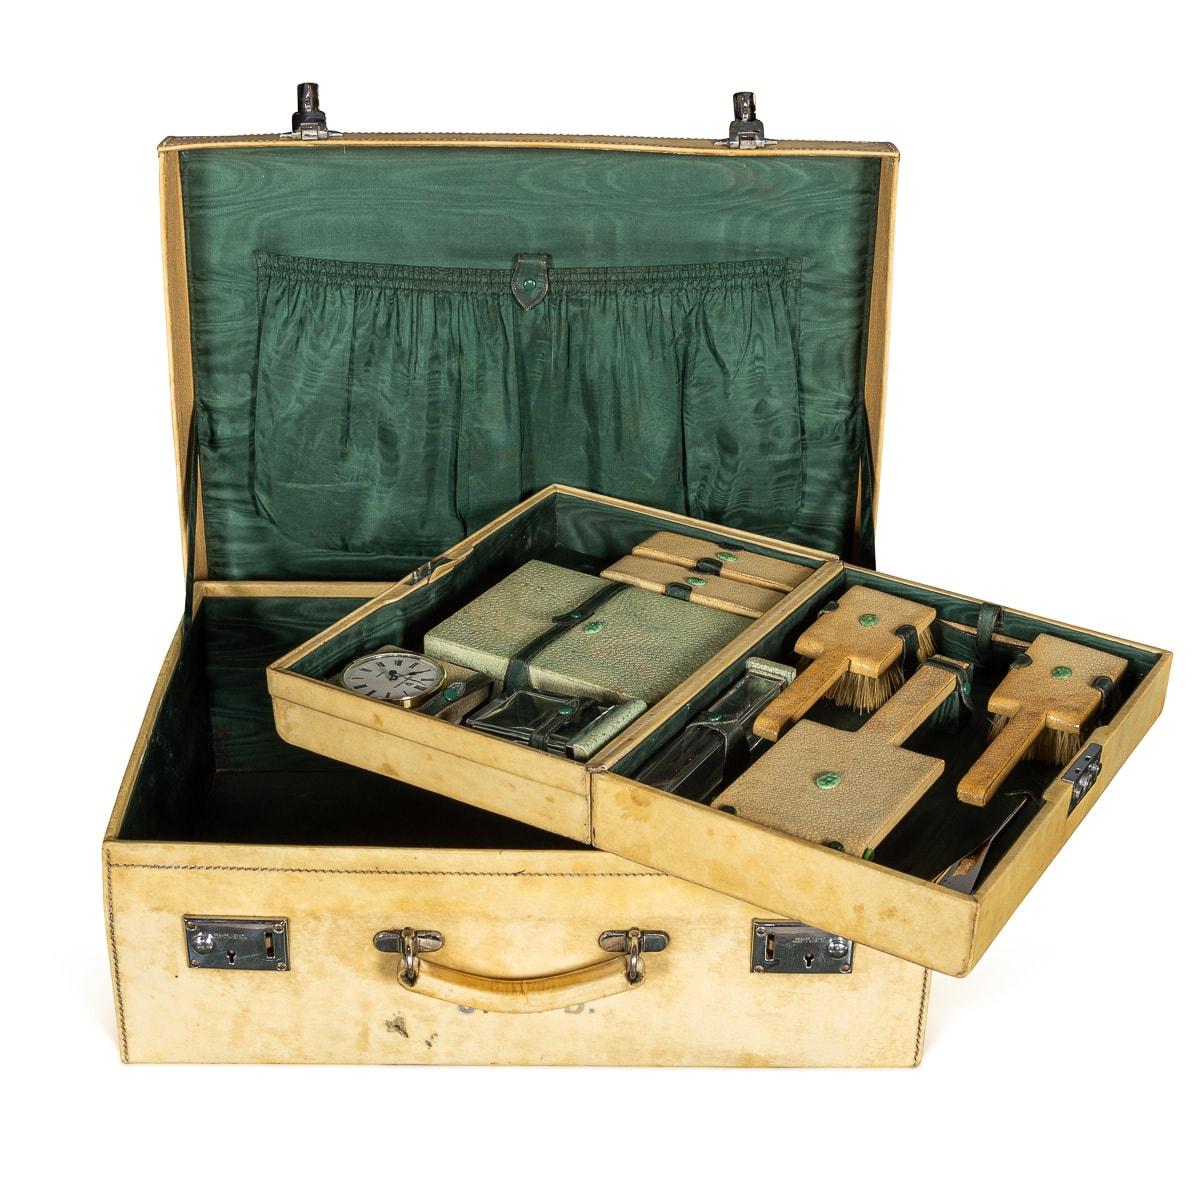 Antiker englischer Koffer aus dem 20. Jahrhundert, gefertigt aus luxuriösem Vellum, begleitet von einem kompakten Innenkoffer, der sowohl für den gemeinsamen als auch für den individuellen Gebrauch geeignet ist. Beide Etuis sind mit einem dekadenten